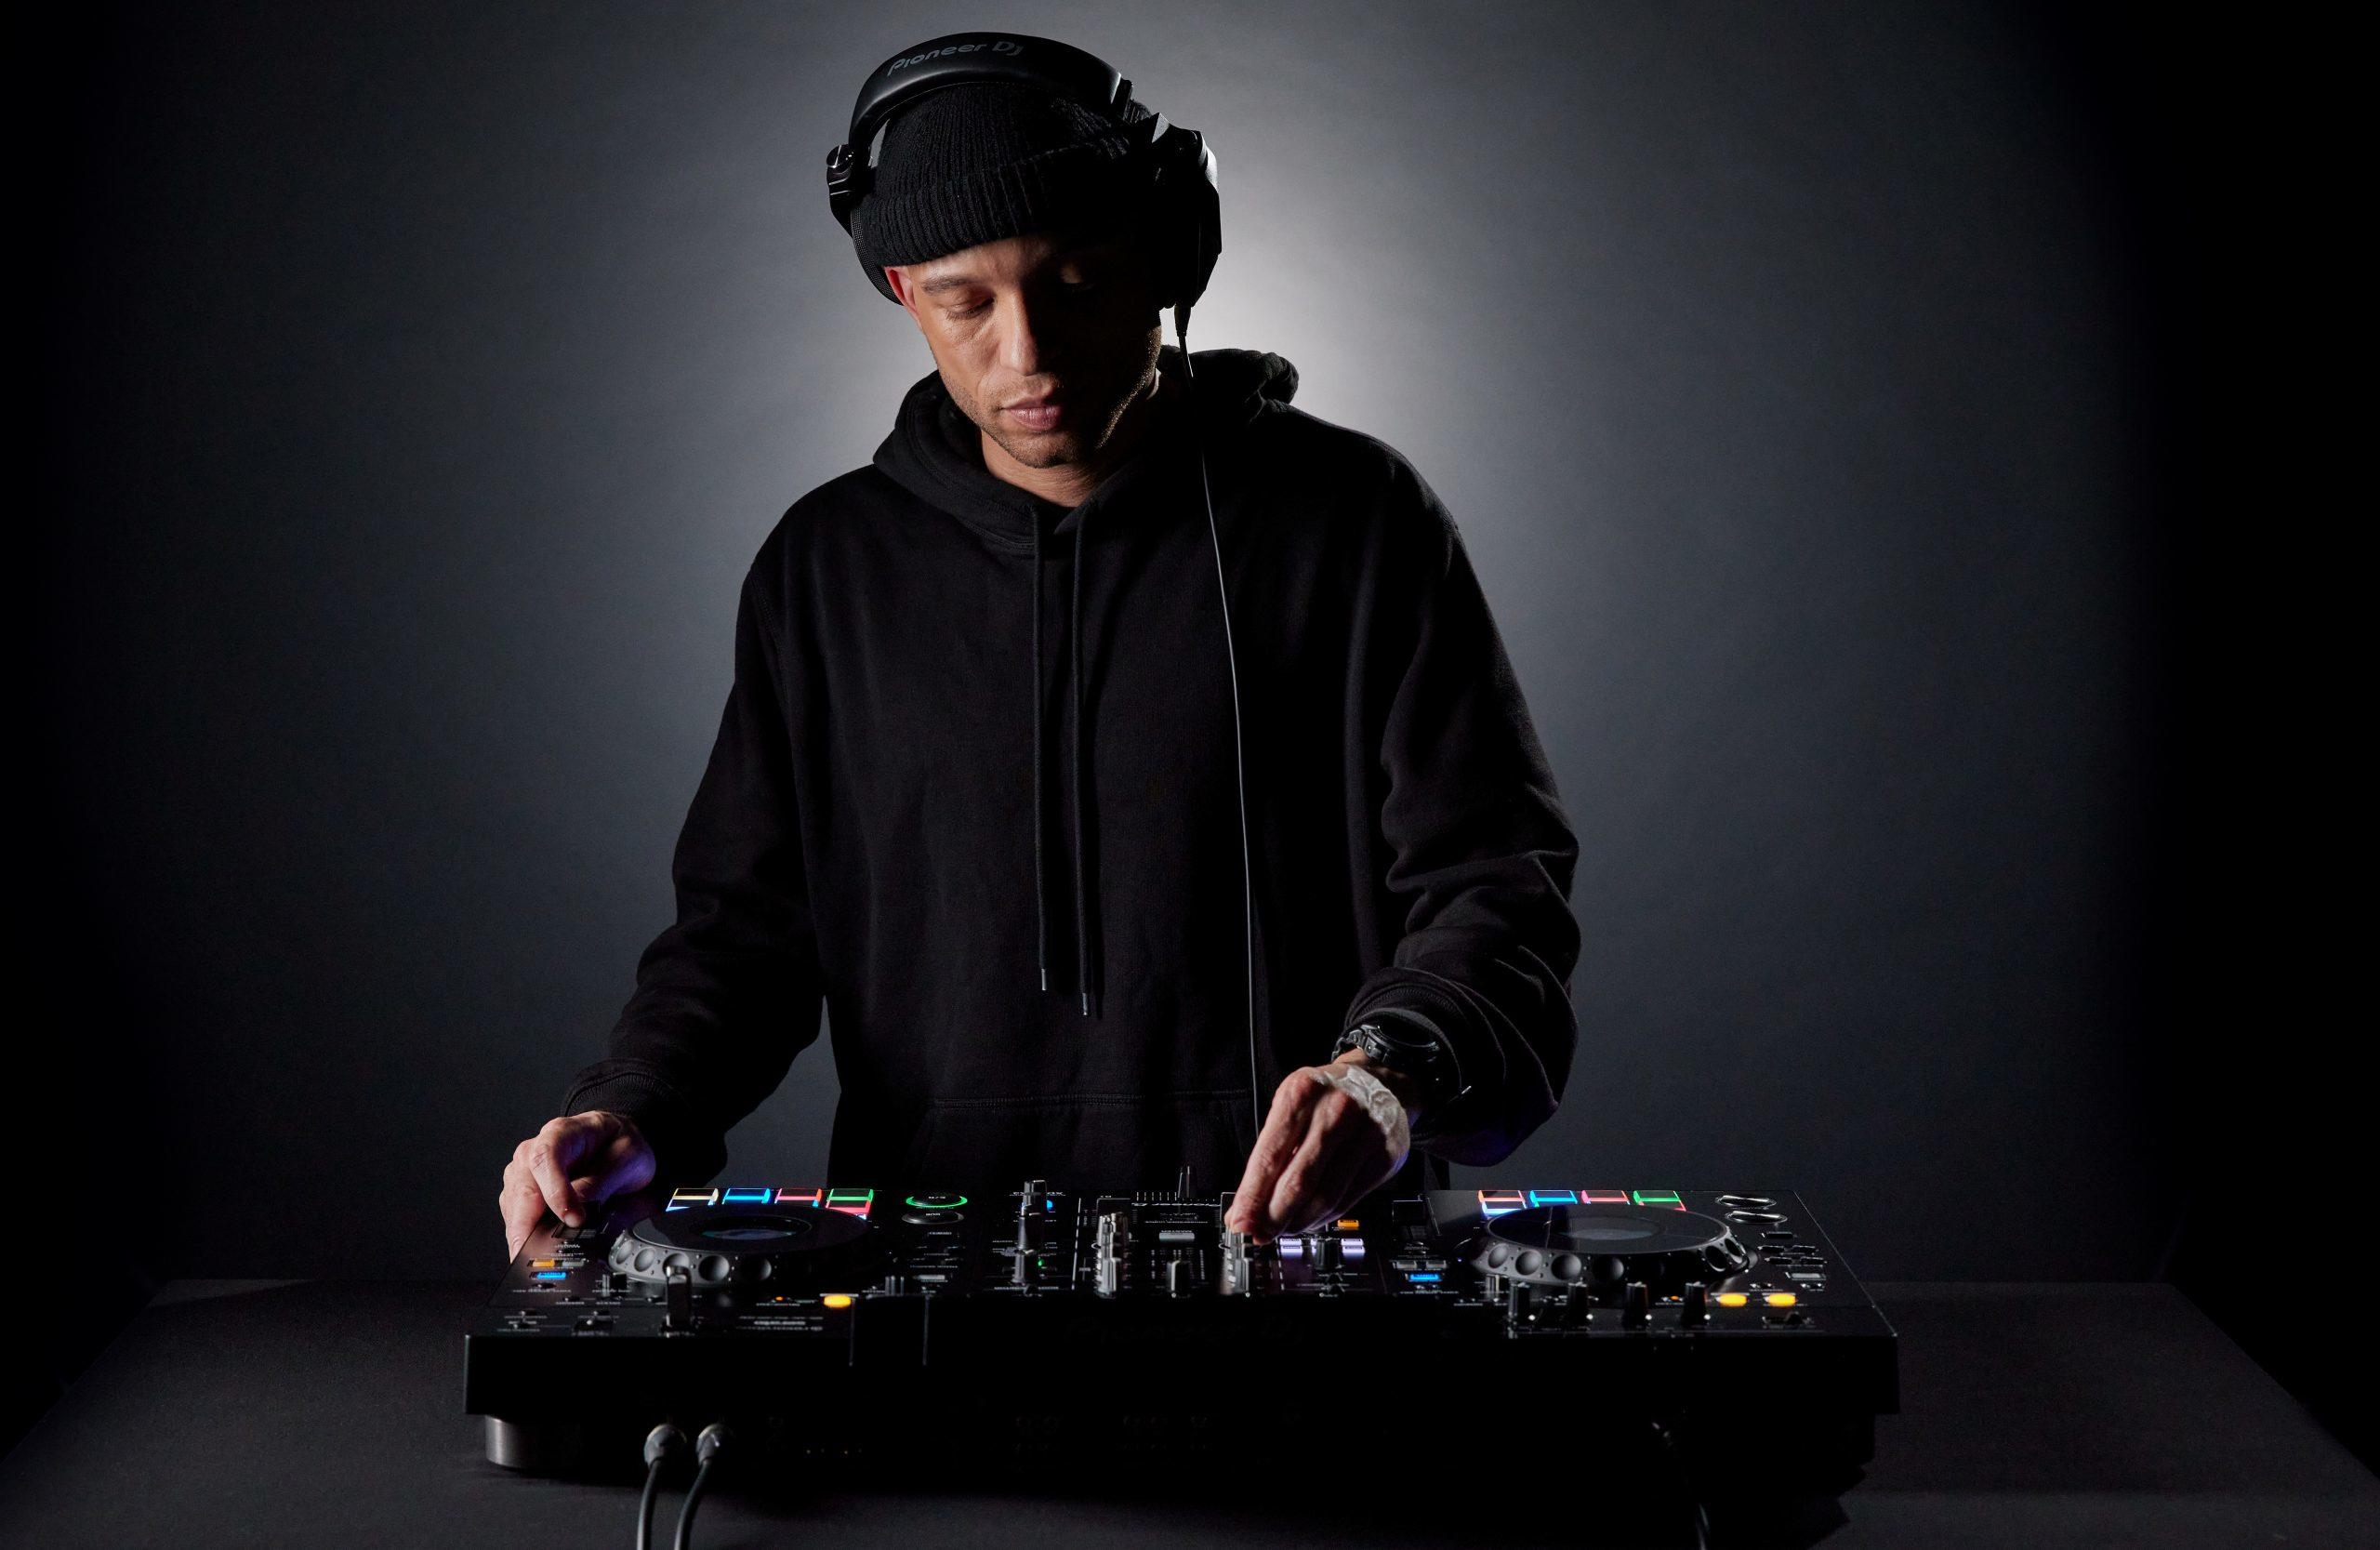 Pioneer DJ XDJ-RX3 performance